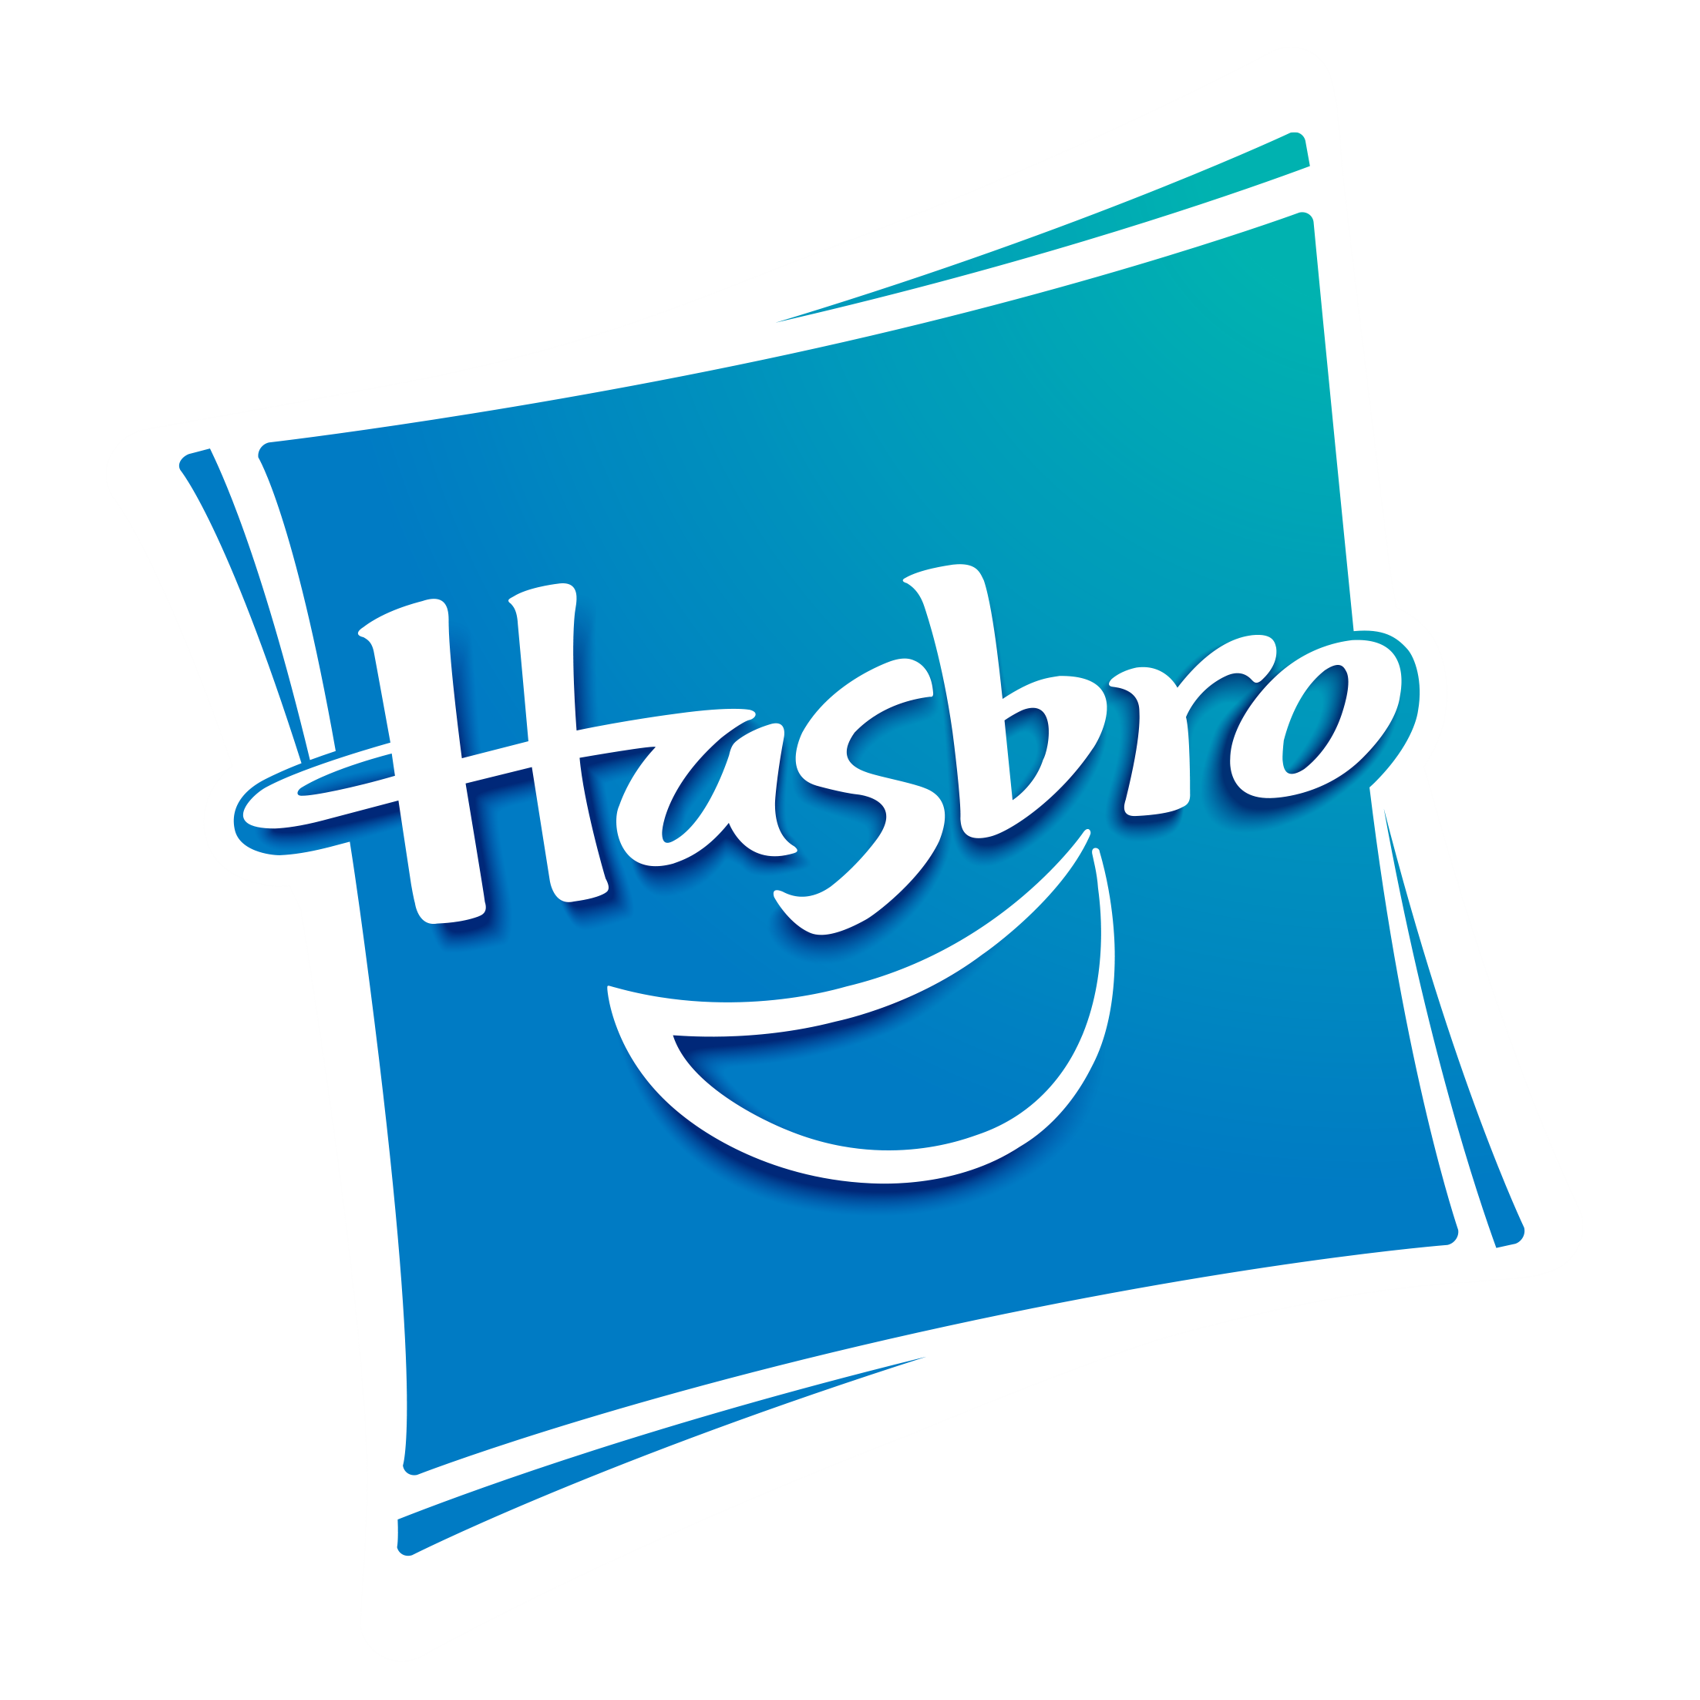 Hasbro_logo_symbol.png